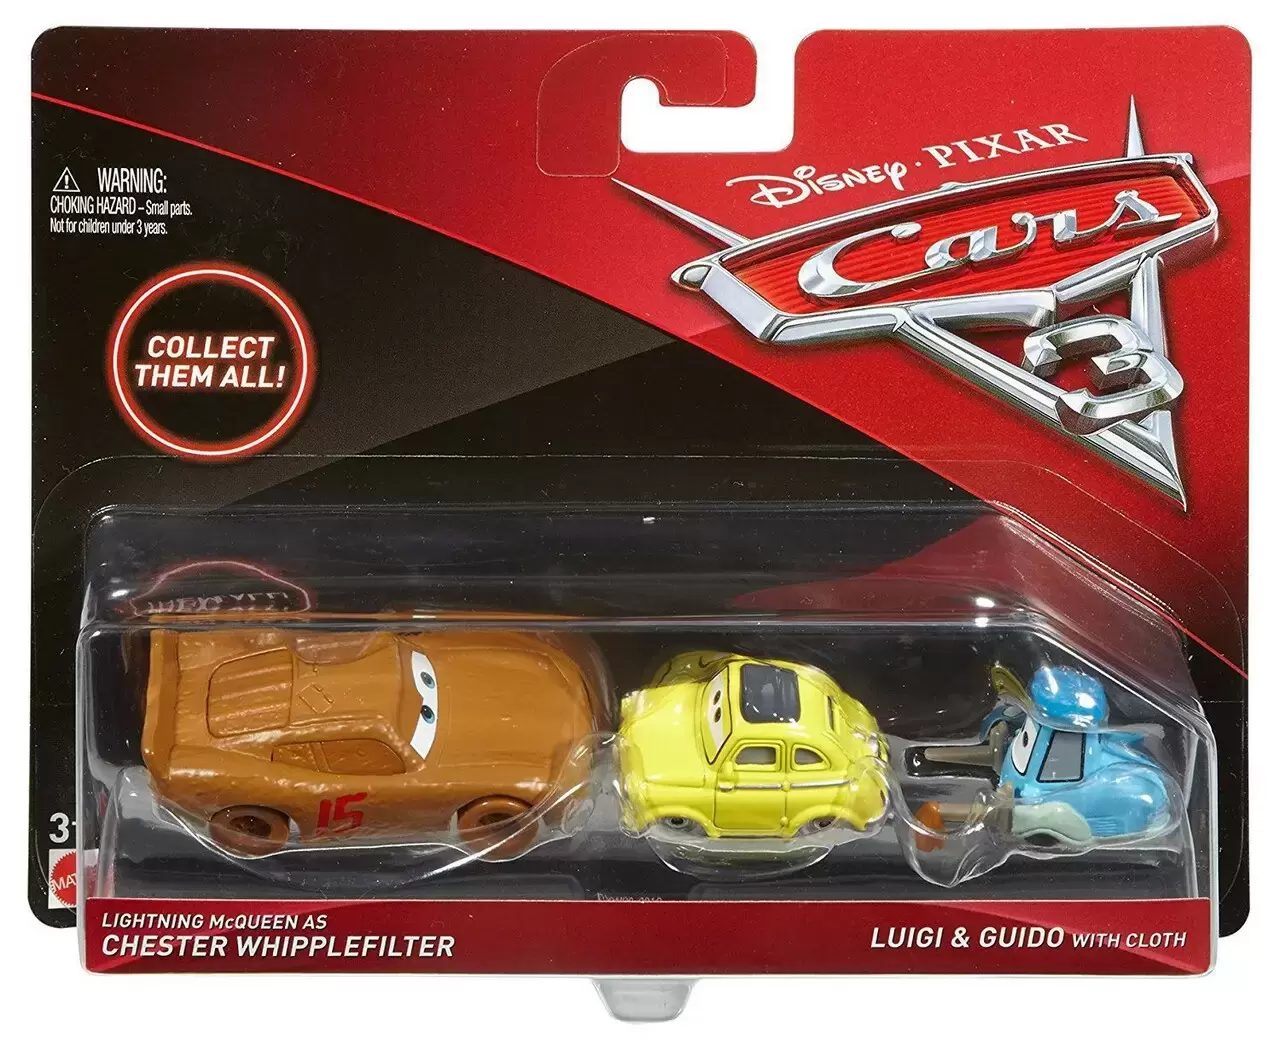 Cars 3 - Lightning McQueen Chester Whipplefilter + Luigi & Guido